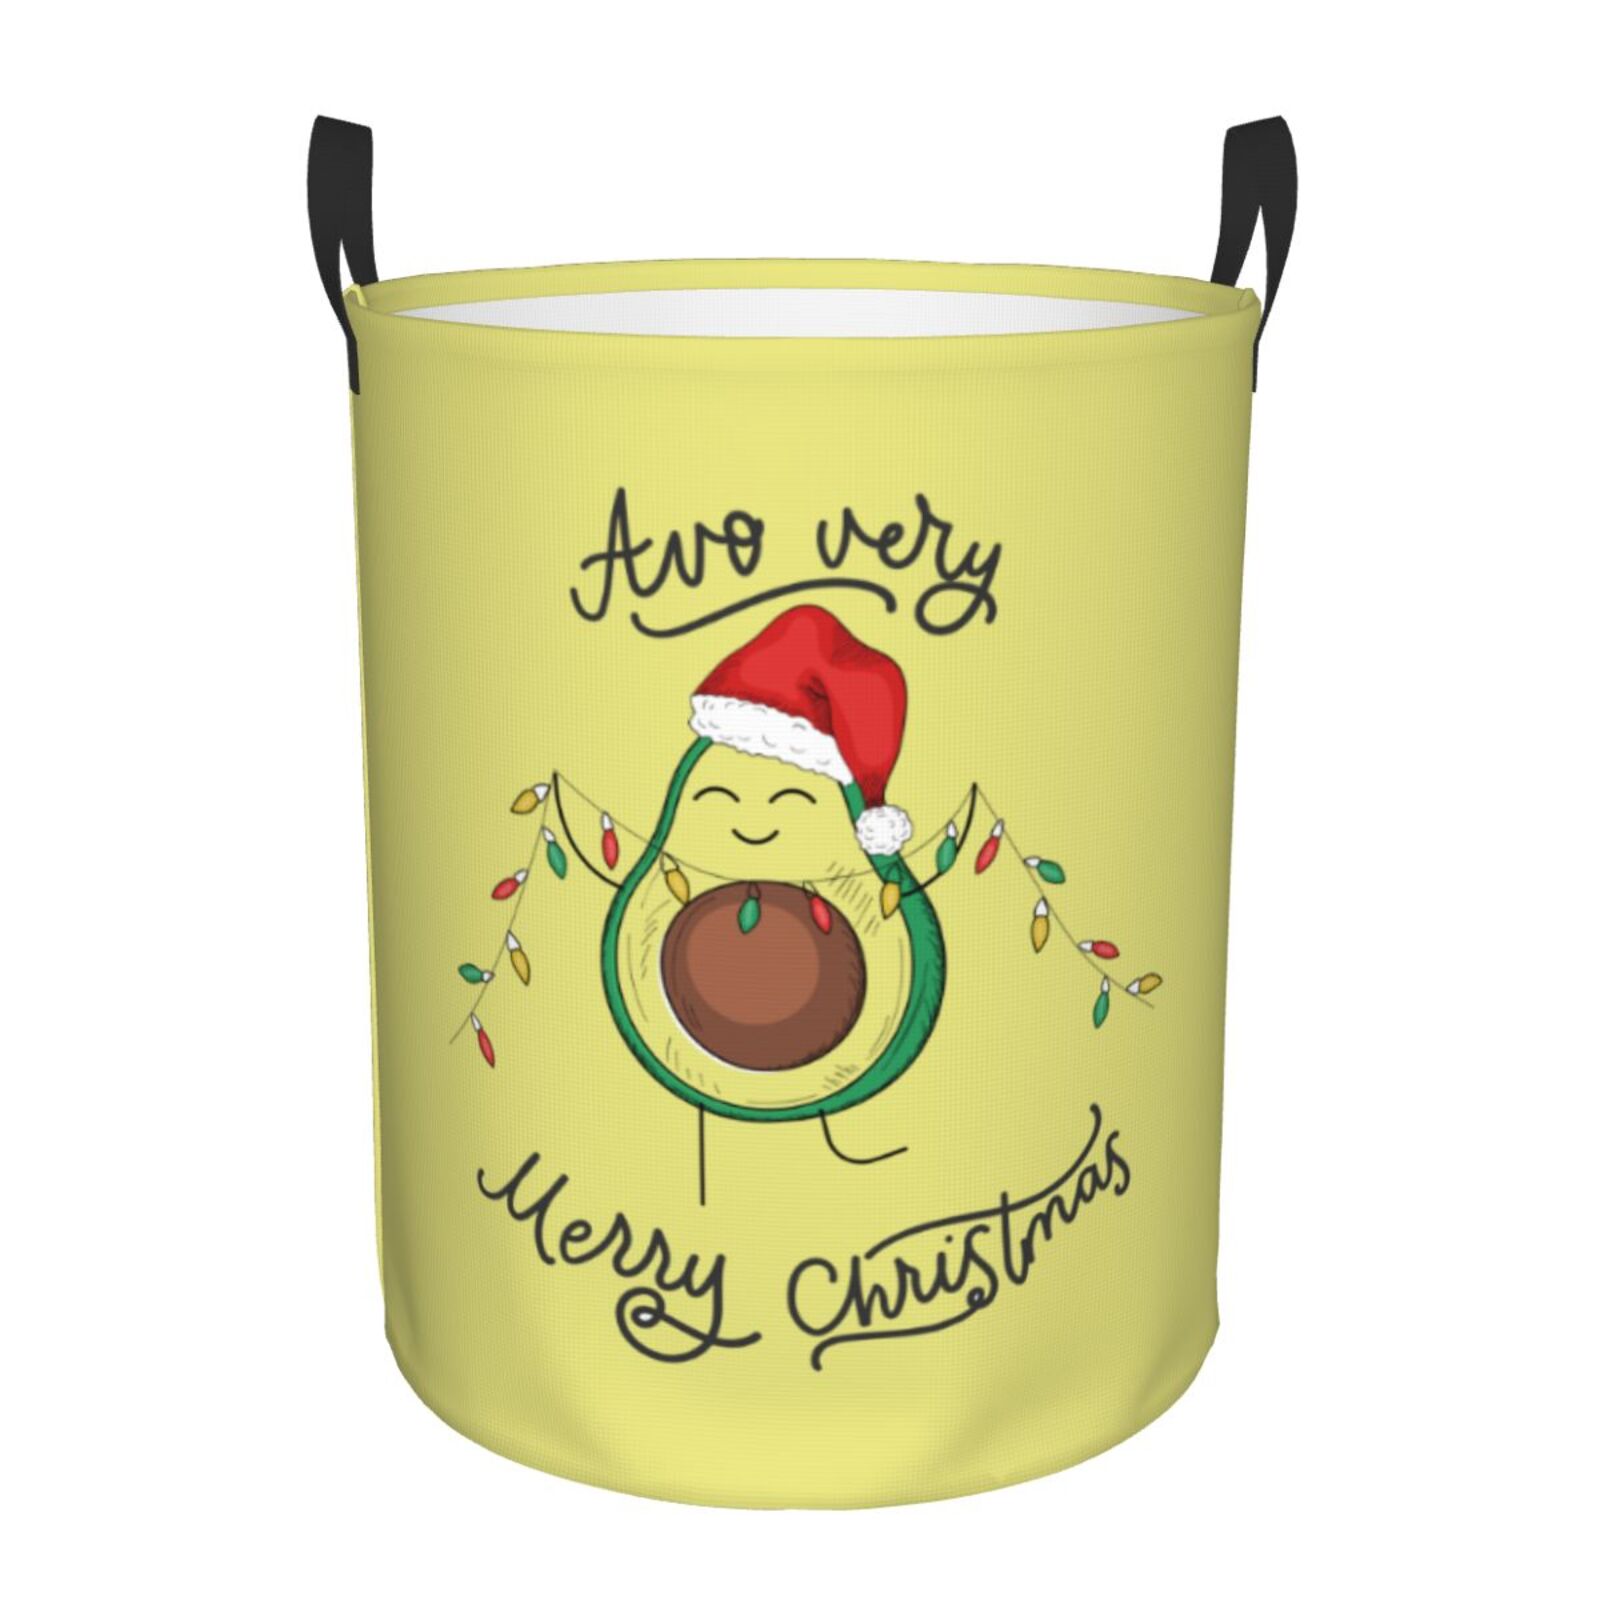 Coaee Avocado Merry Christmas Laundry Basket with Handle, Waterproof ...